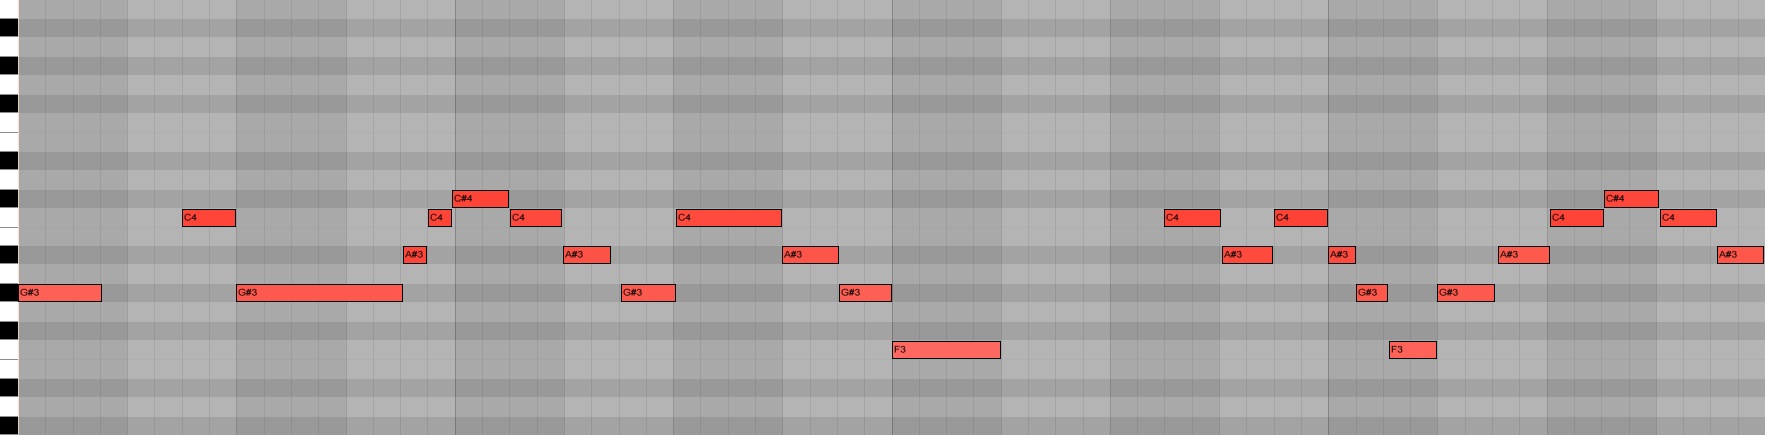 MIDI Grid